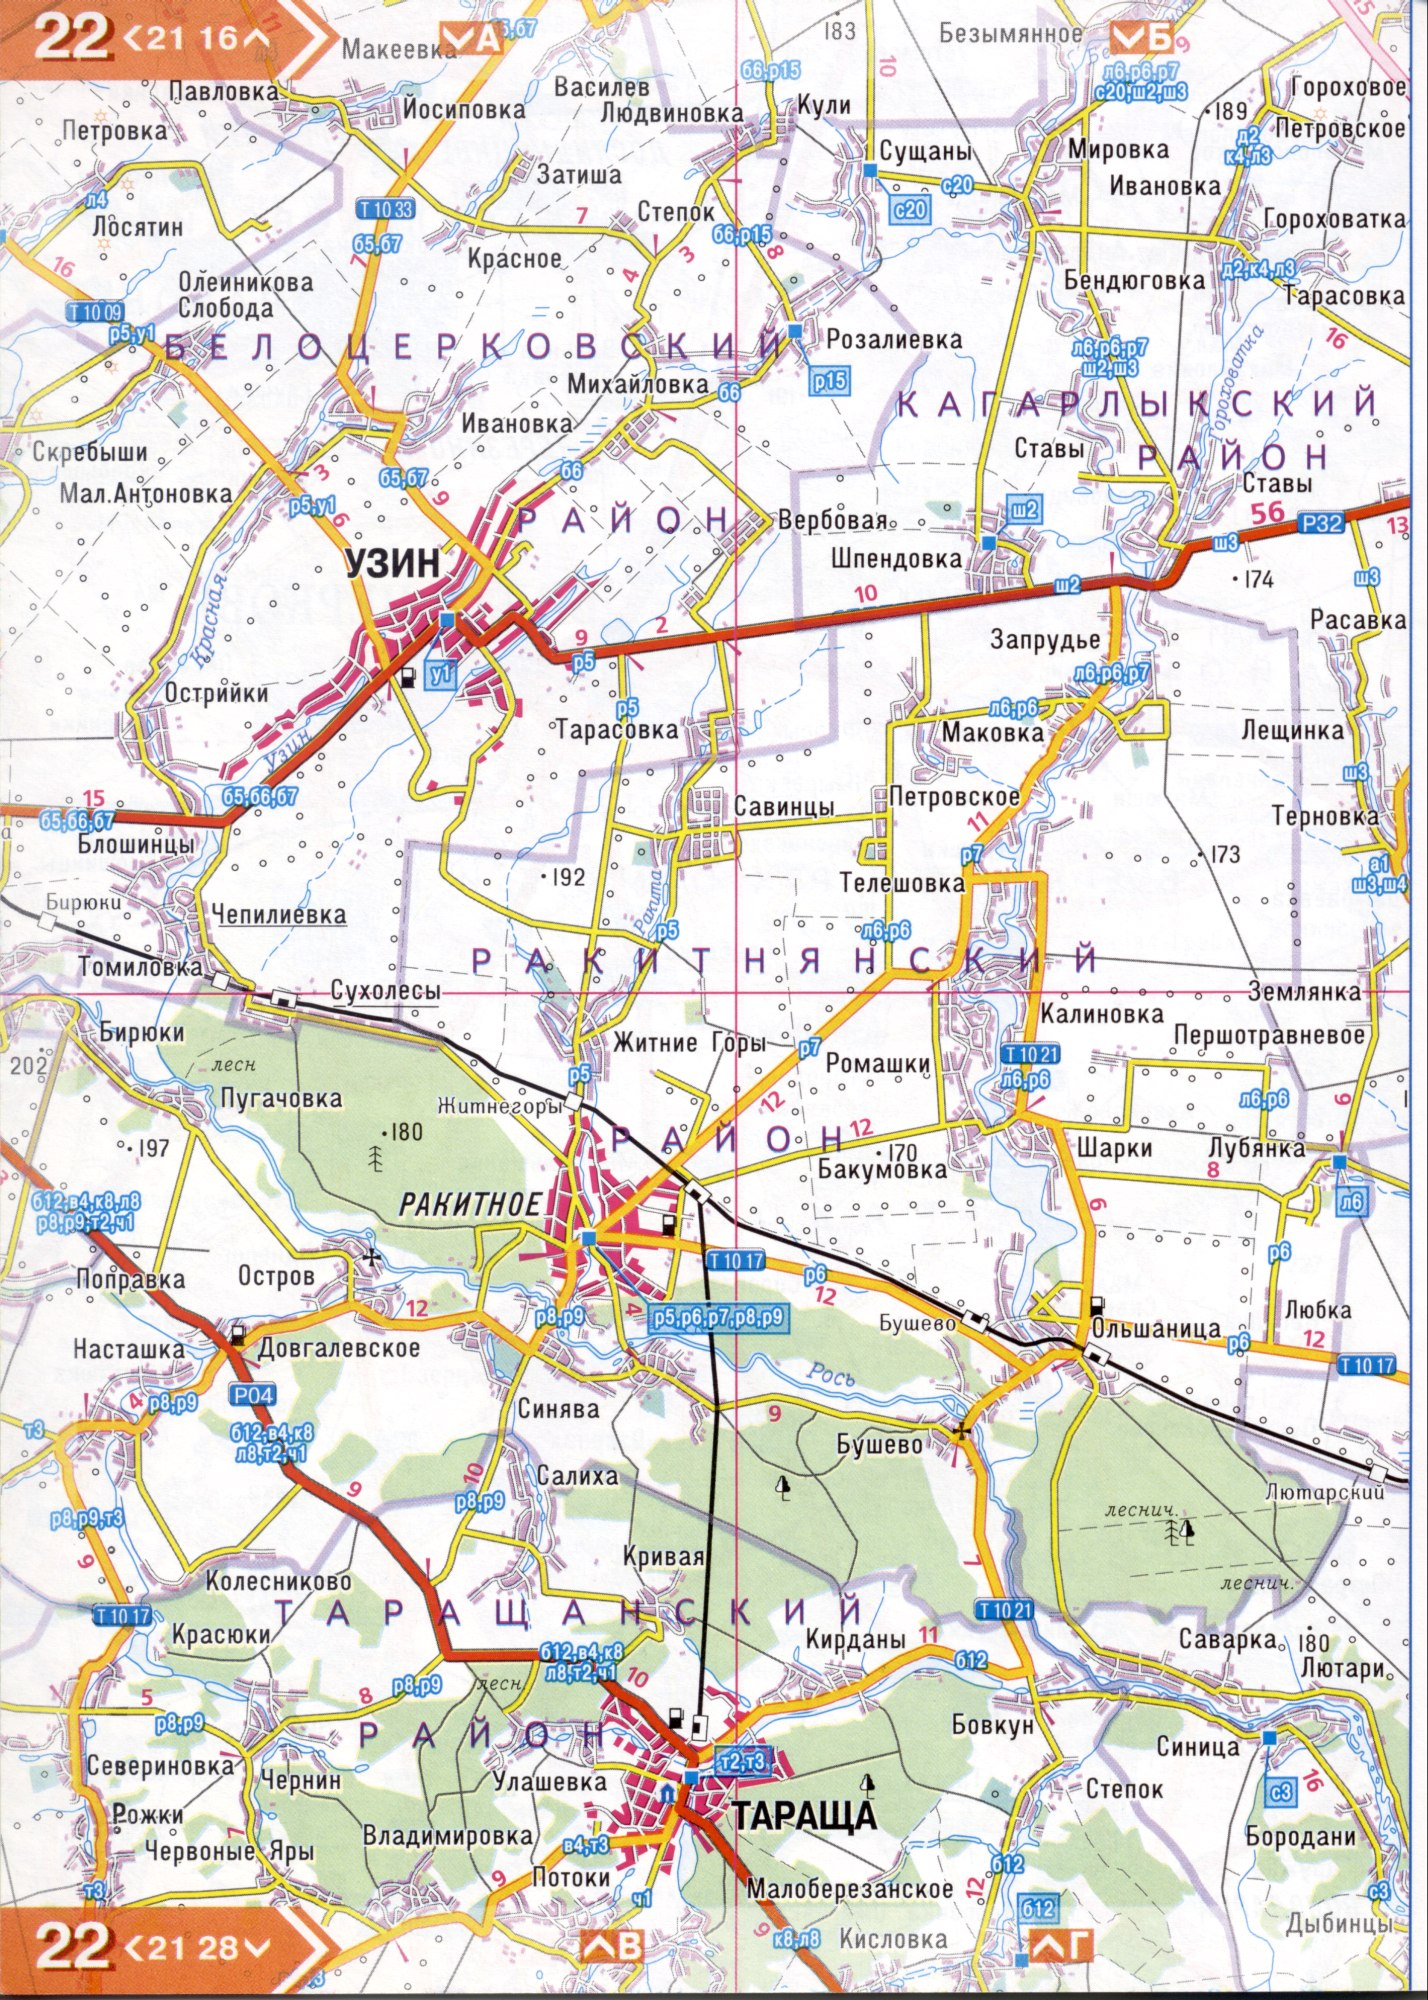 Atlas von der Region Kiew. Eine detaillierte Karte der Region Kiew von dem Atlas von Autobahnen. Kiewer Gebiet auf einer detaillierten Karte Maßstab 1cm = 3km. Frei, C4